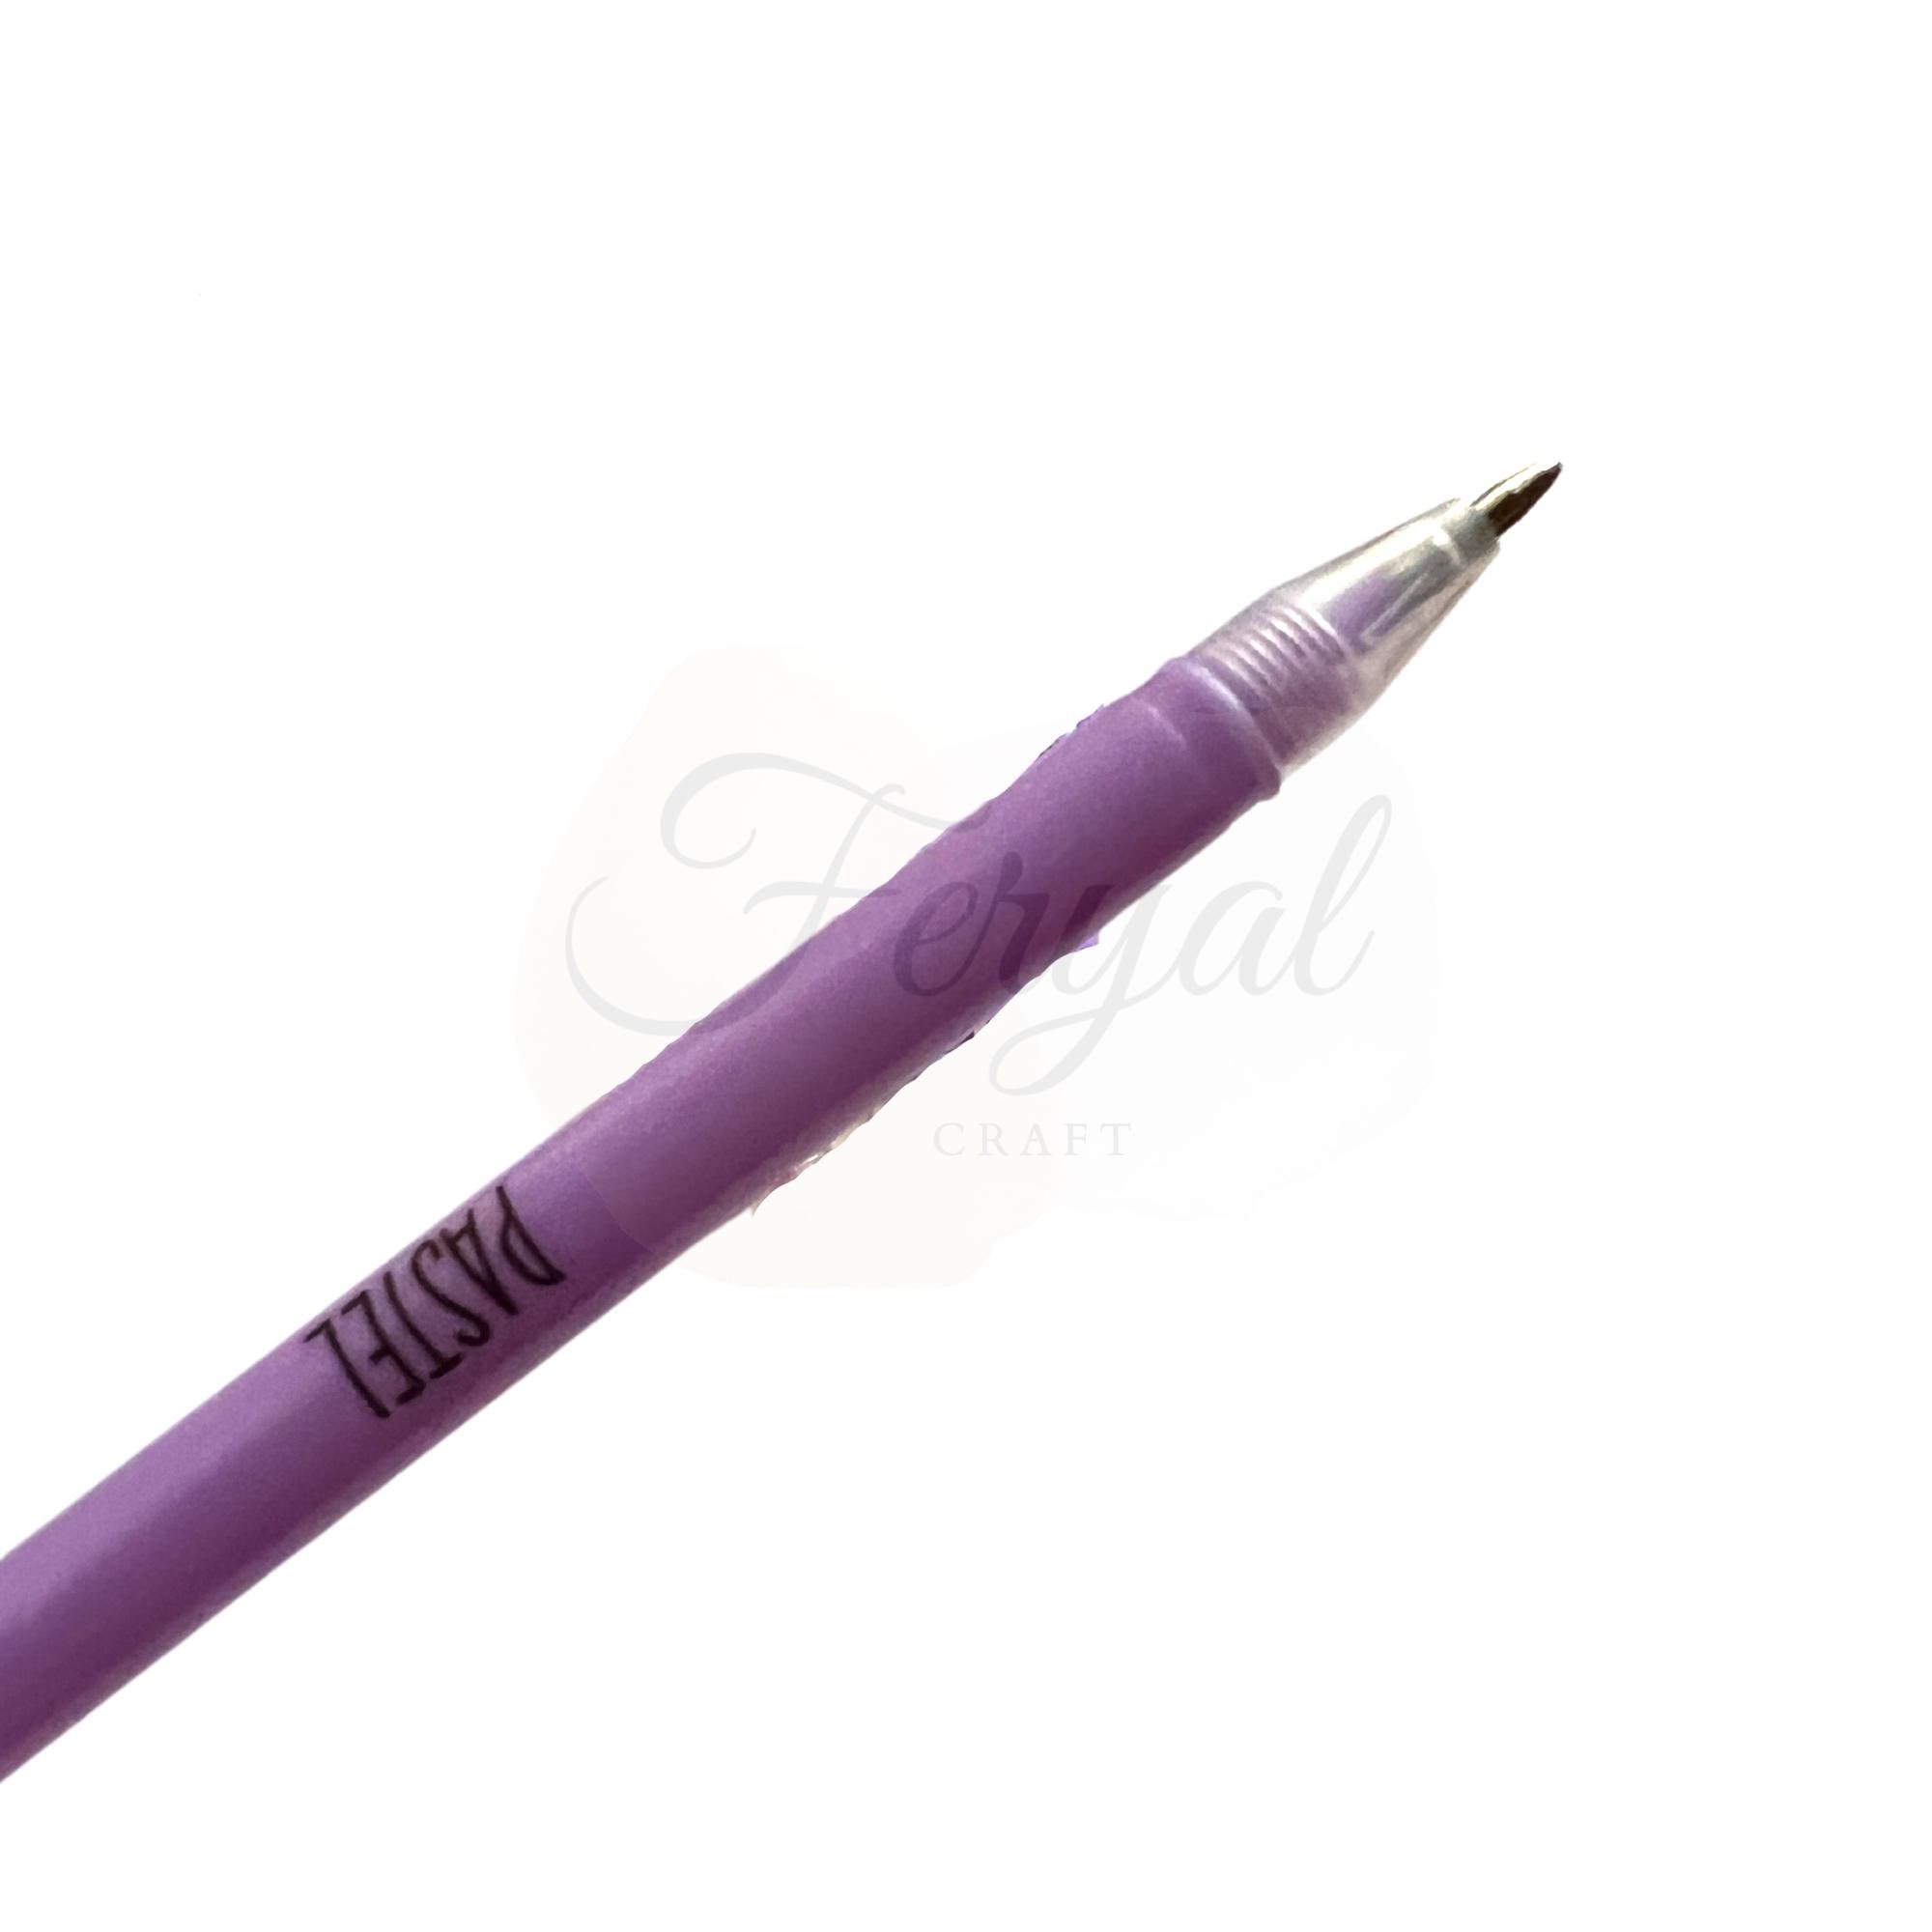 24 36 48 color Gel Pen Set Refills Metallic Pastel Neon Glitter